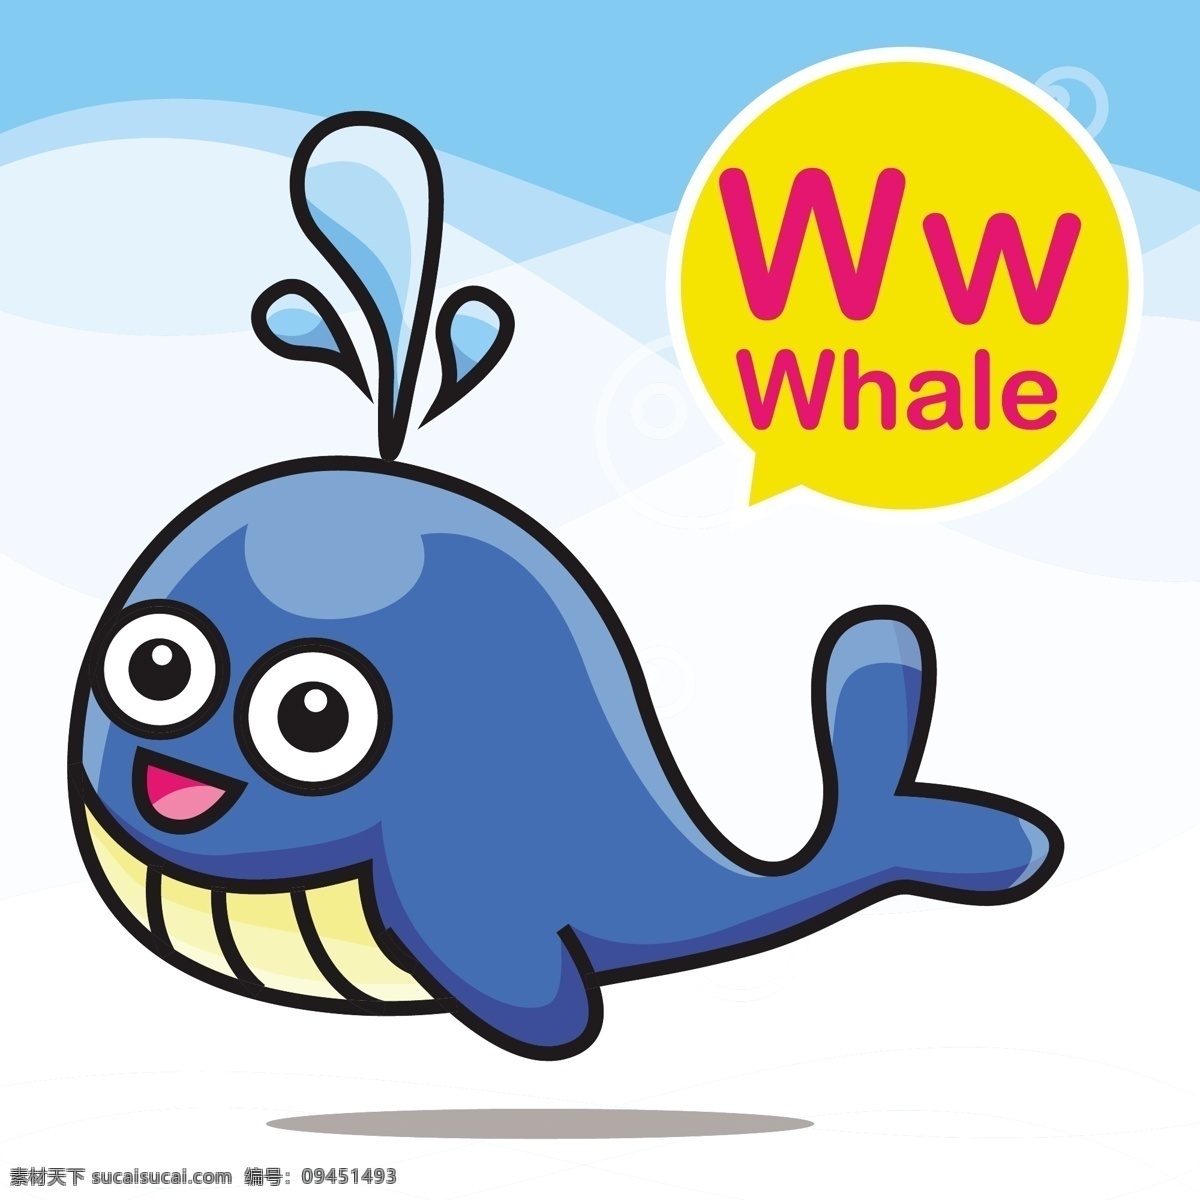 鲸鱼 卡通 小 动物 矢量 背景 喷水 英语 幼儿园 教学 学习 卡牌 手绘 形象